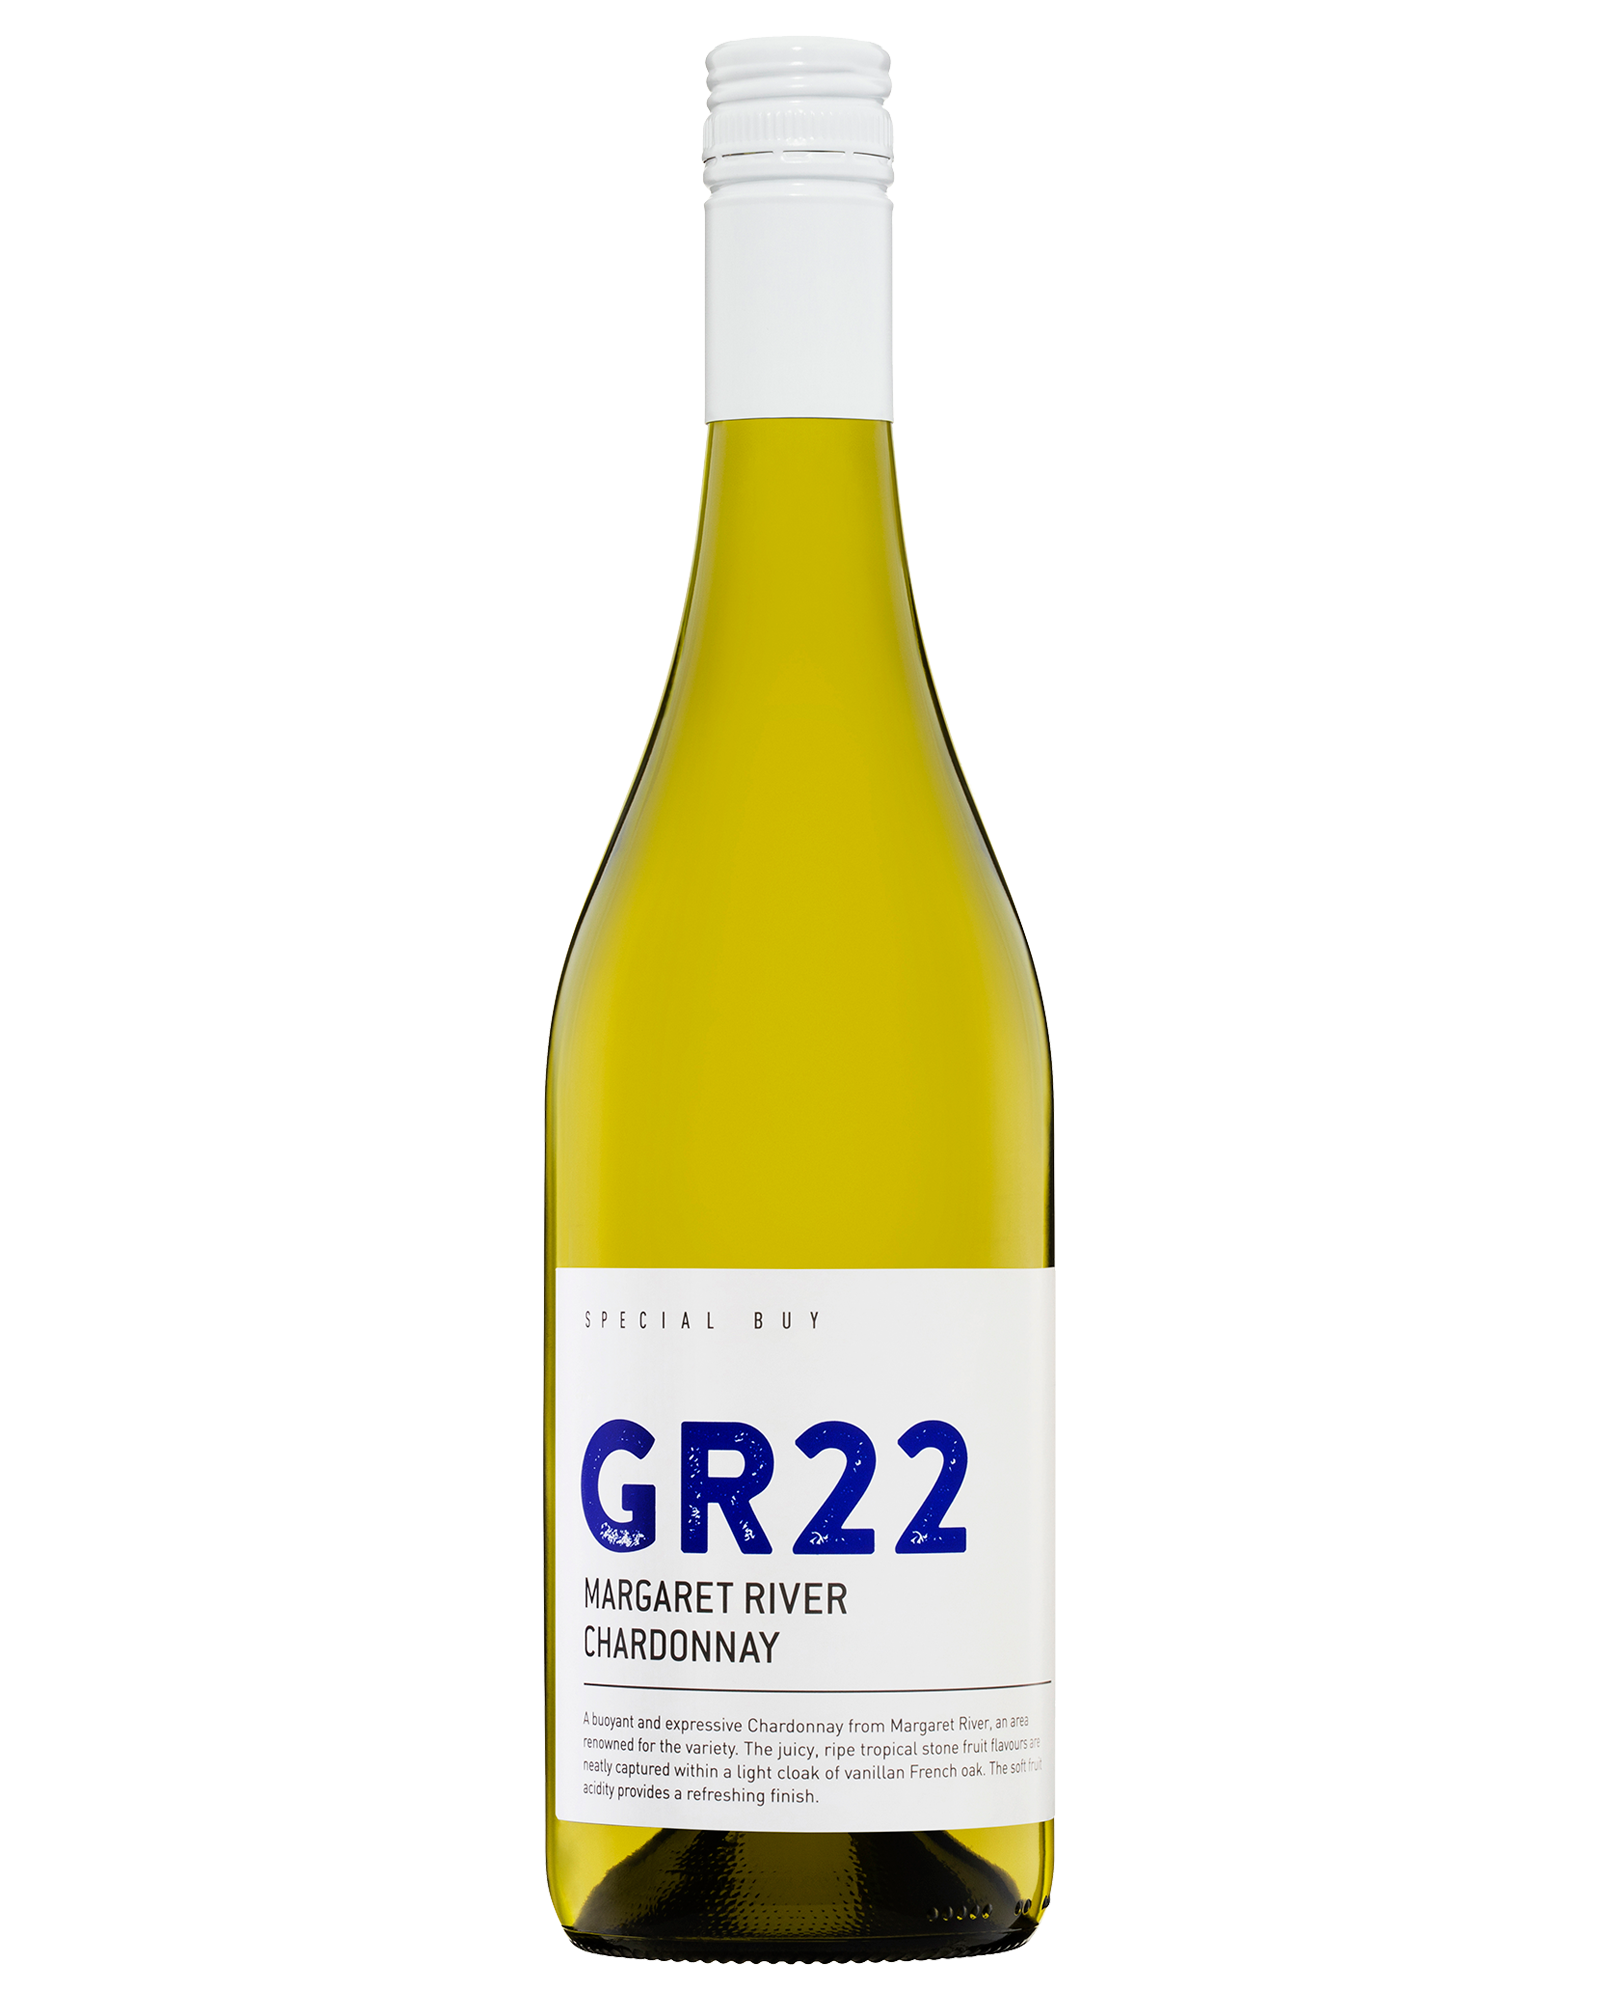 Cleanskin GR22 Margaret River Chardonnay